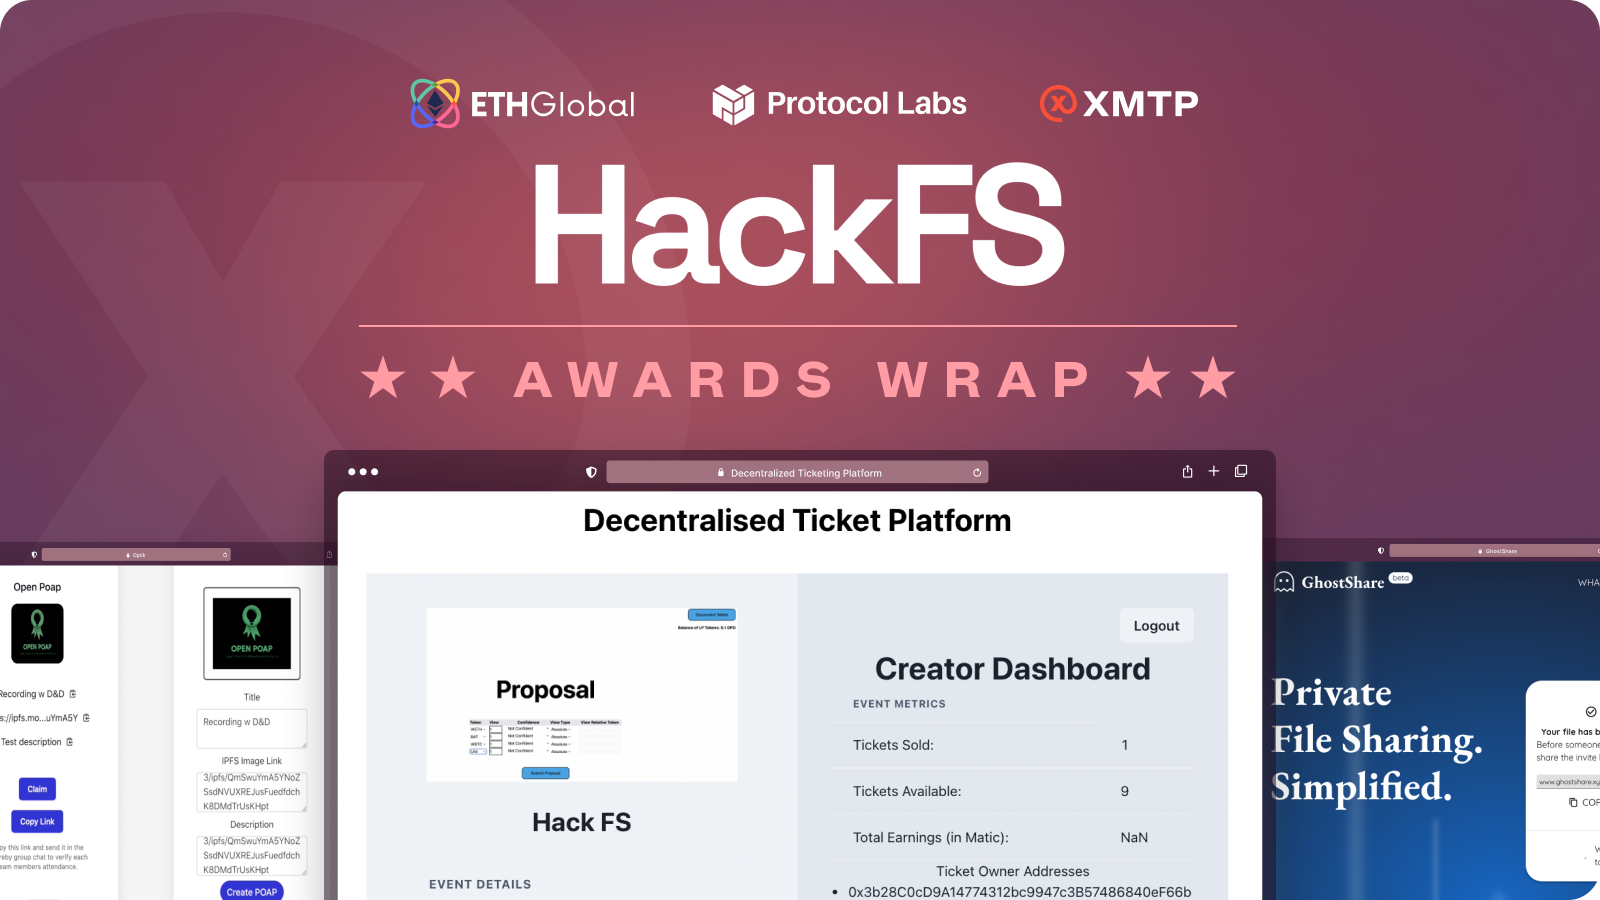 HackFS awards wrap card